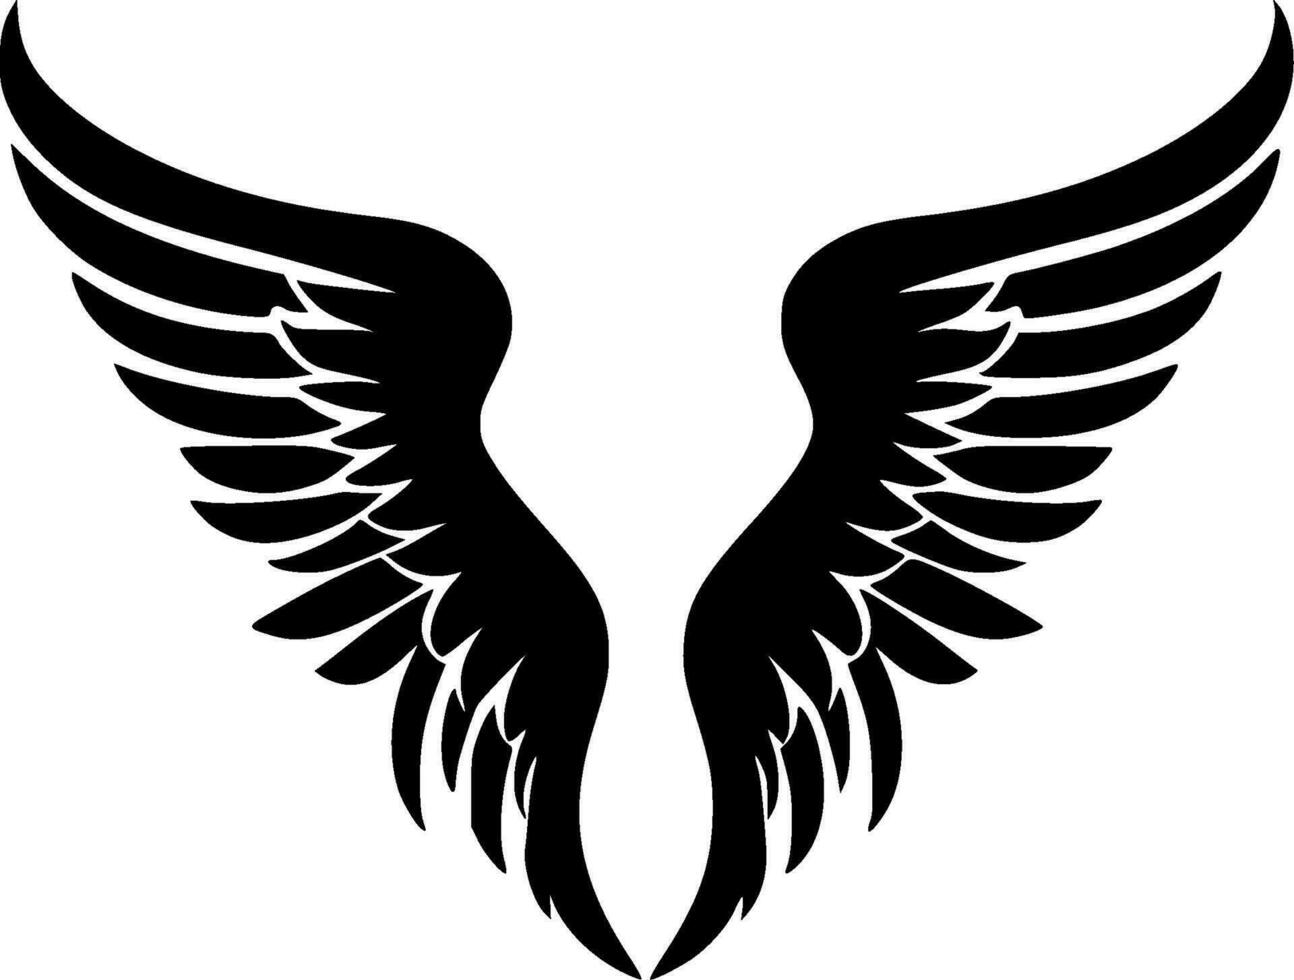 anjo asas - Alto qualidade vetor logotipo - vetor ilustração ideal para camiseta gráfico